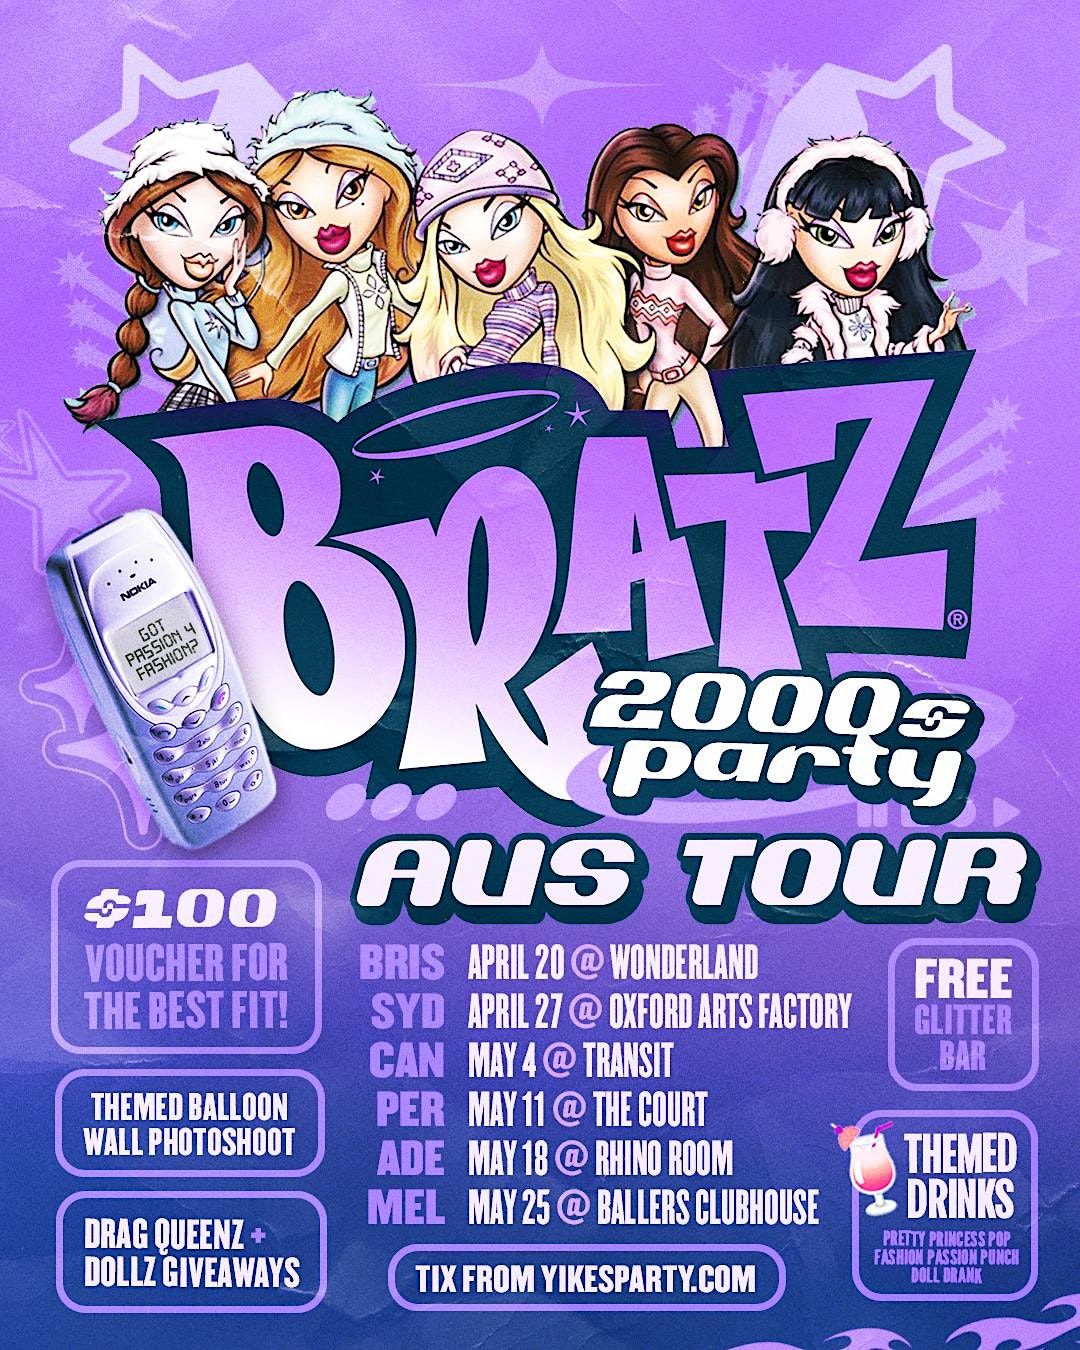 BRATZ 2000s Party Brisbane